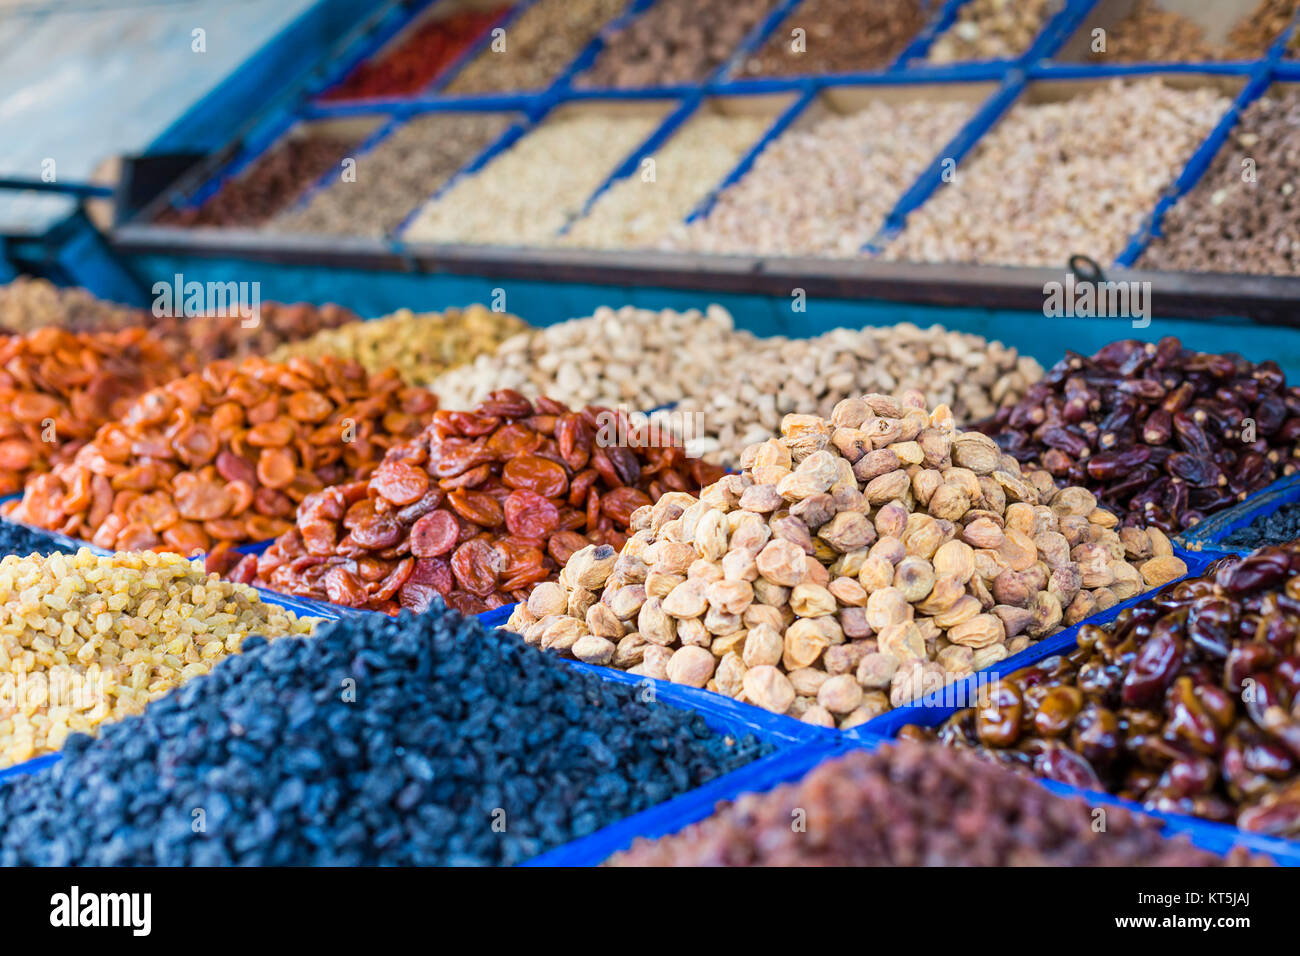 Frutta secca e spezie come anacardi, uvetta, chiodi di garofano, anice, ecc. sul display per la vendita in un bazar di SSL a Bishkek Kirghizistan. Foto Stock